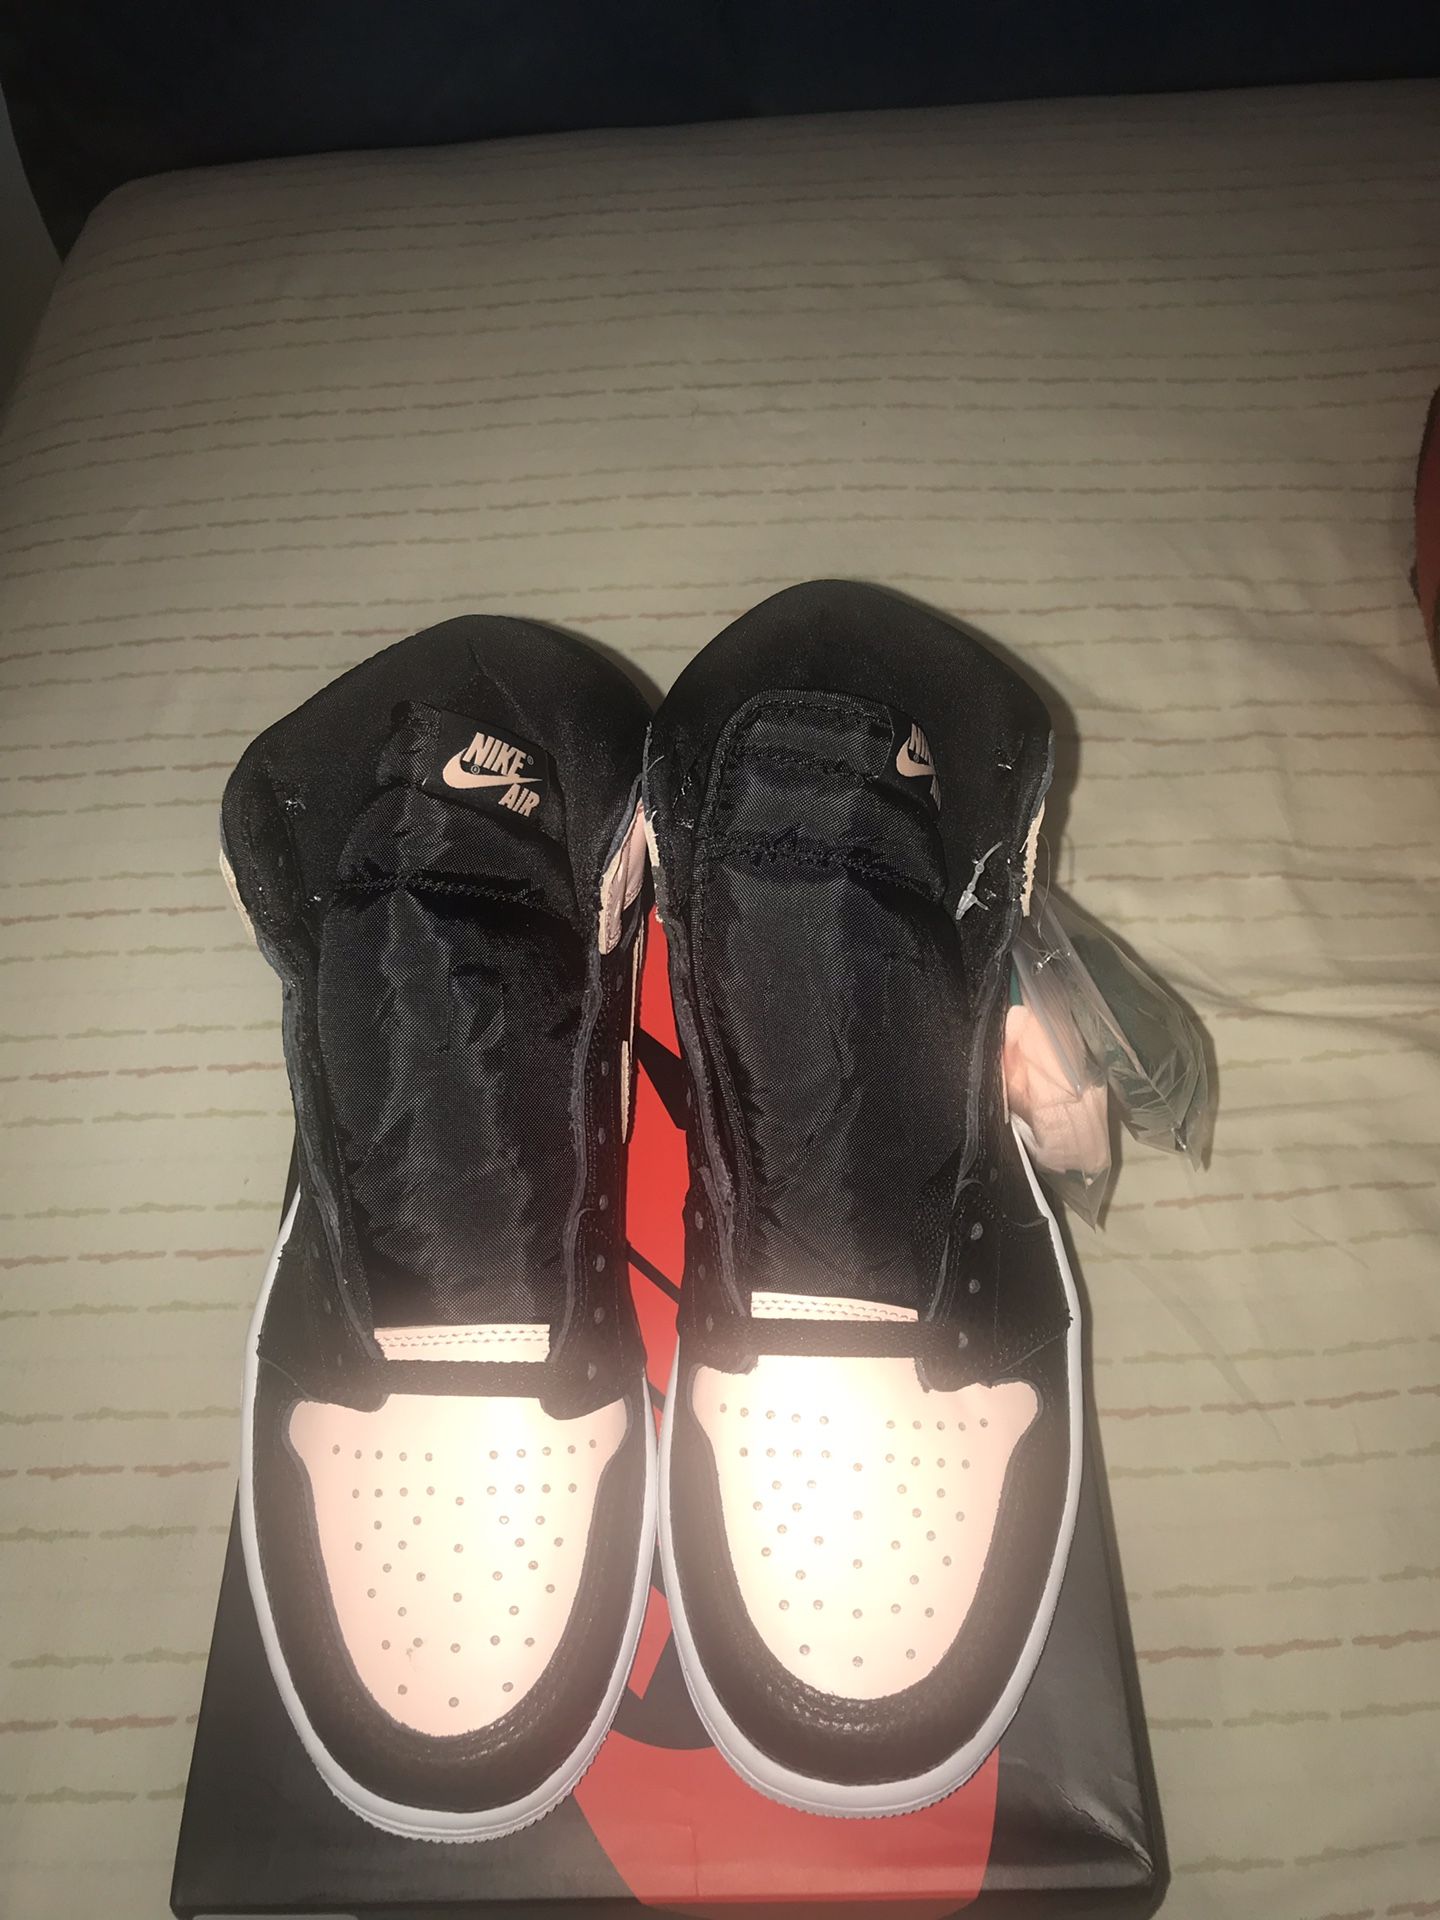 Air Jordan 1 crimson tint size 9.5